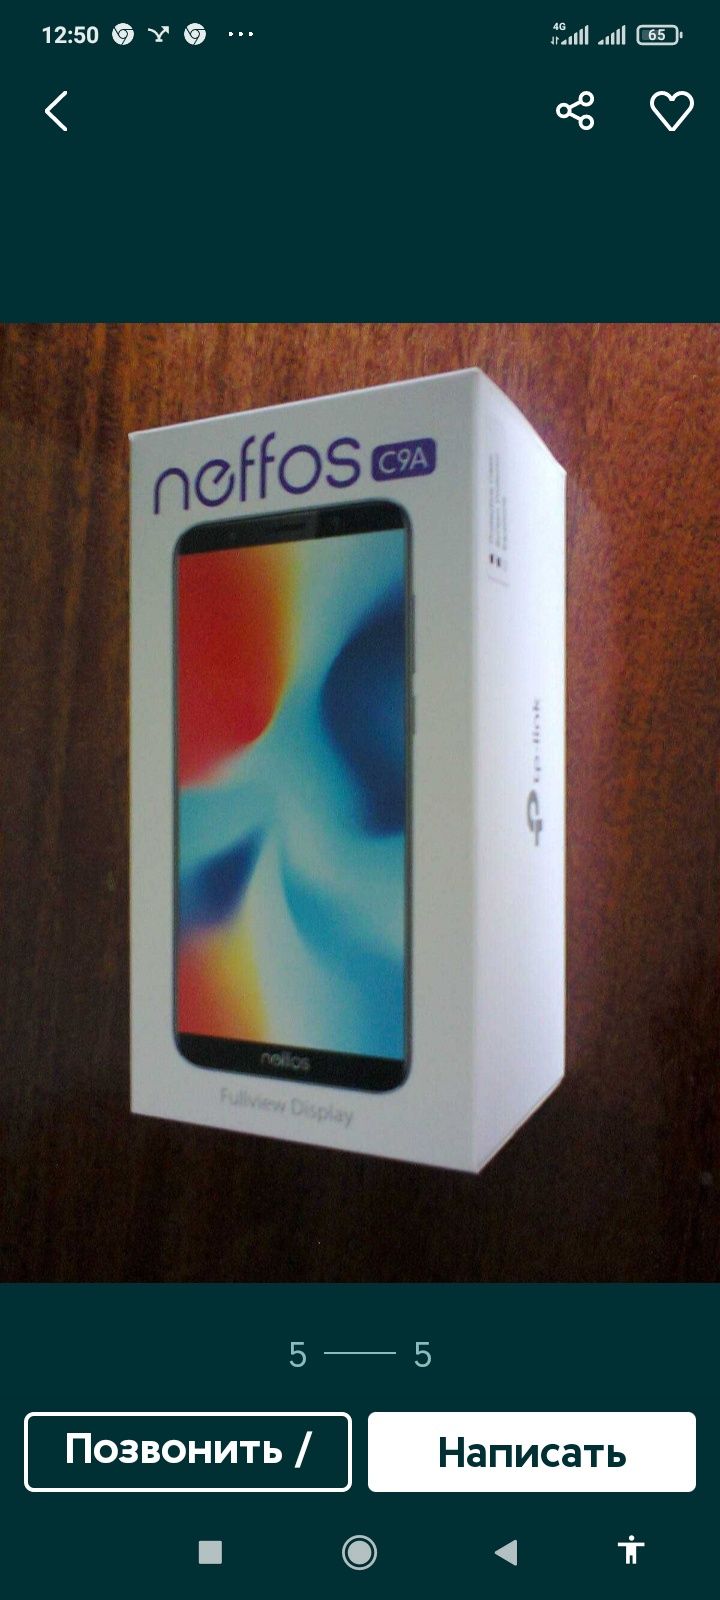 Продам 2 телефона Neffos C9A